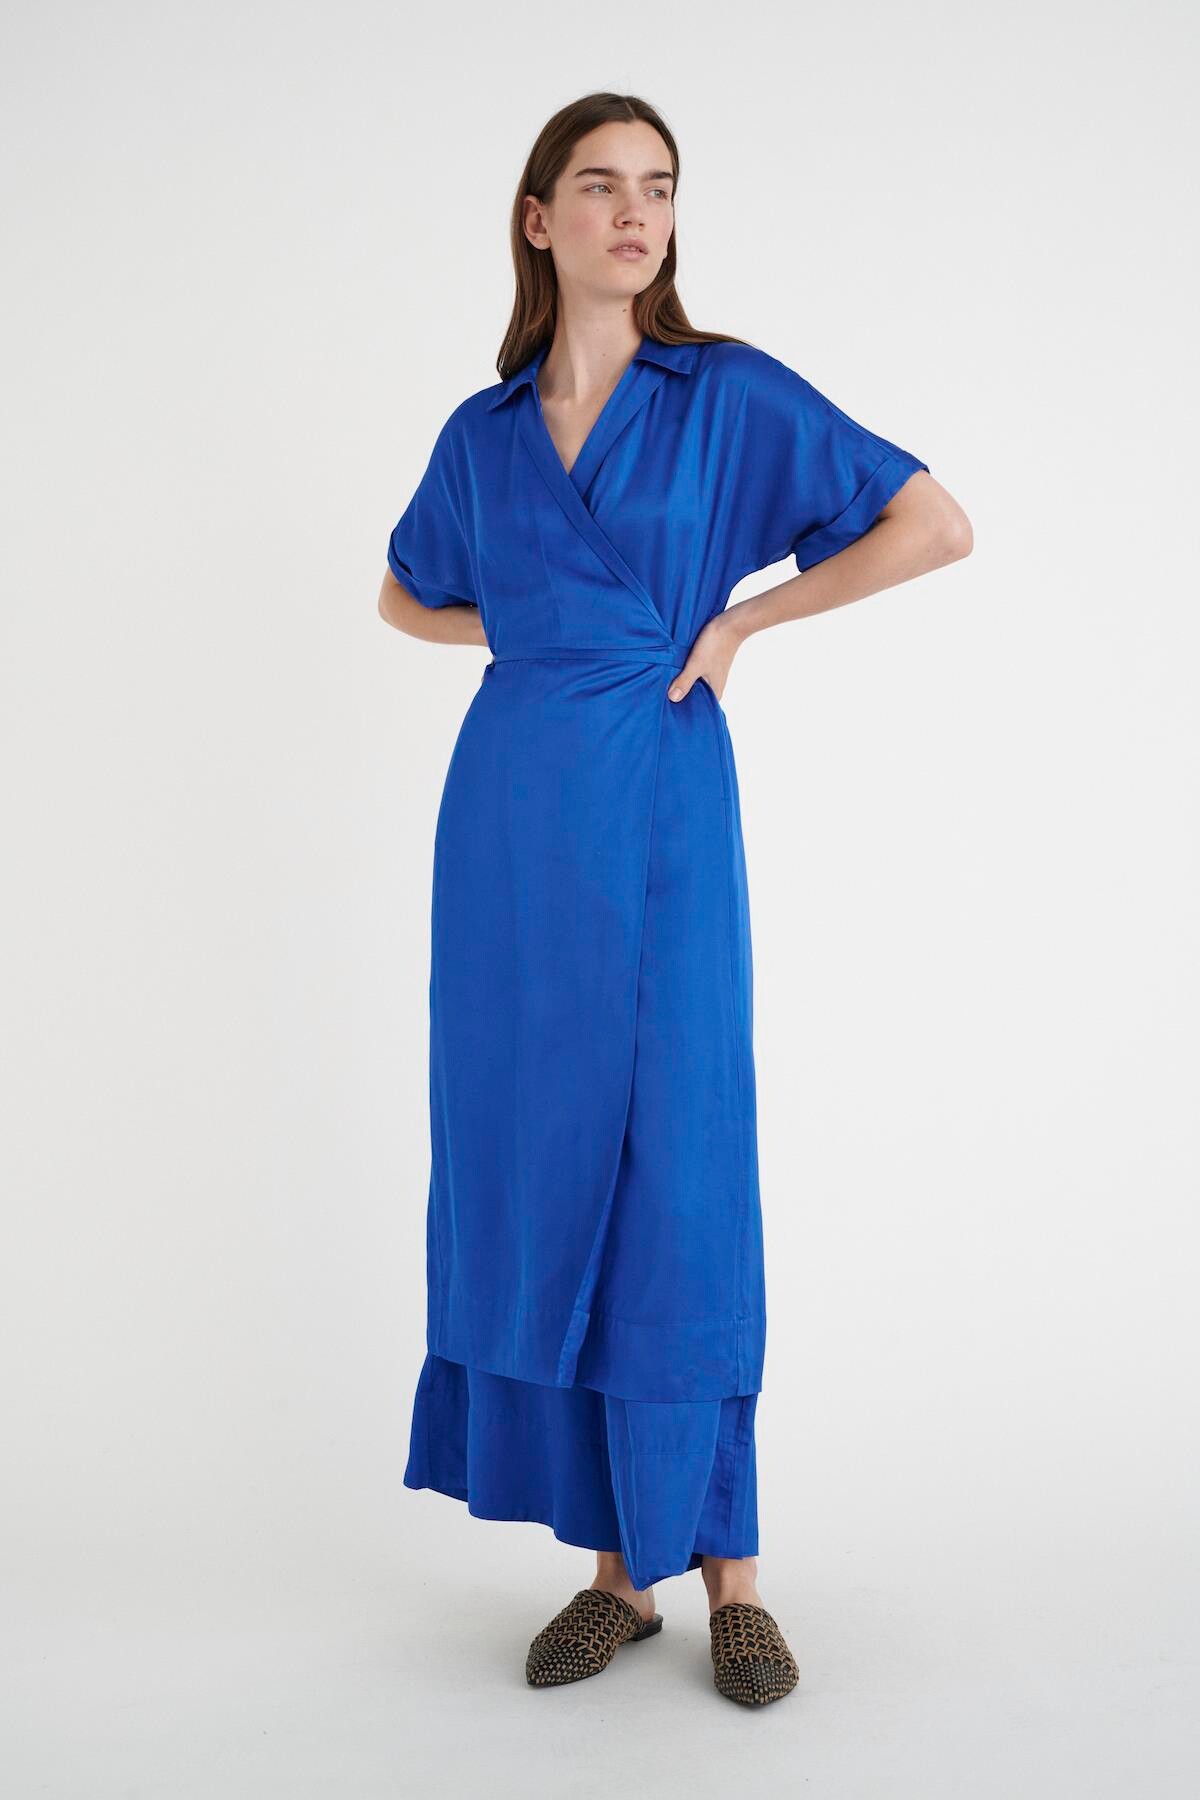 Inwear Rosalineiw Wrap Kjole, Farve: Greek Blå, Størrelse: 36, Dame